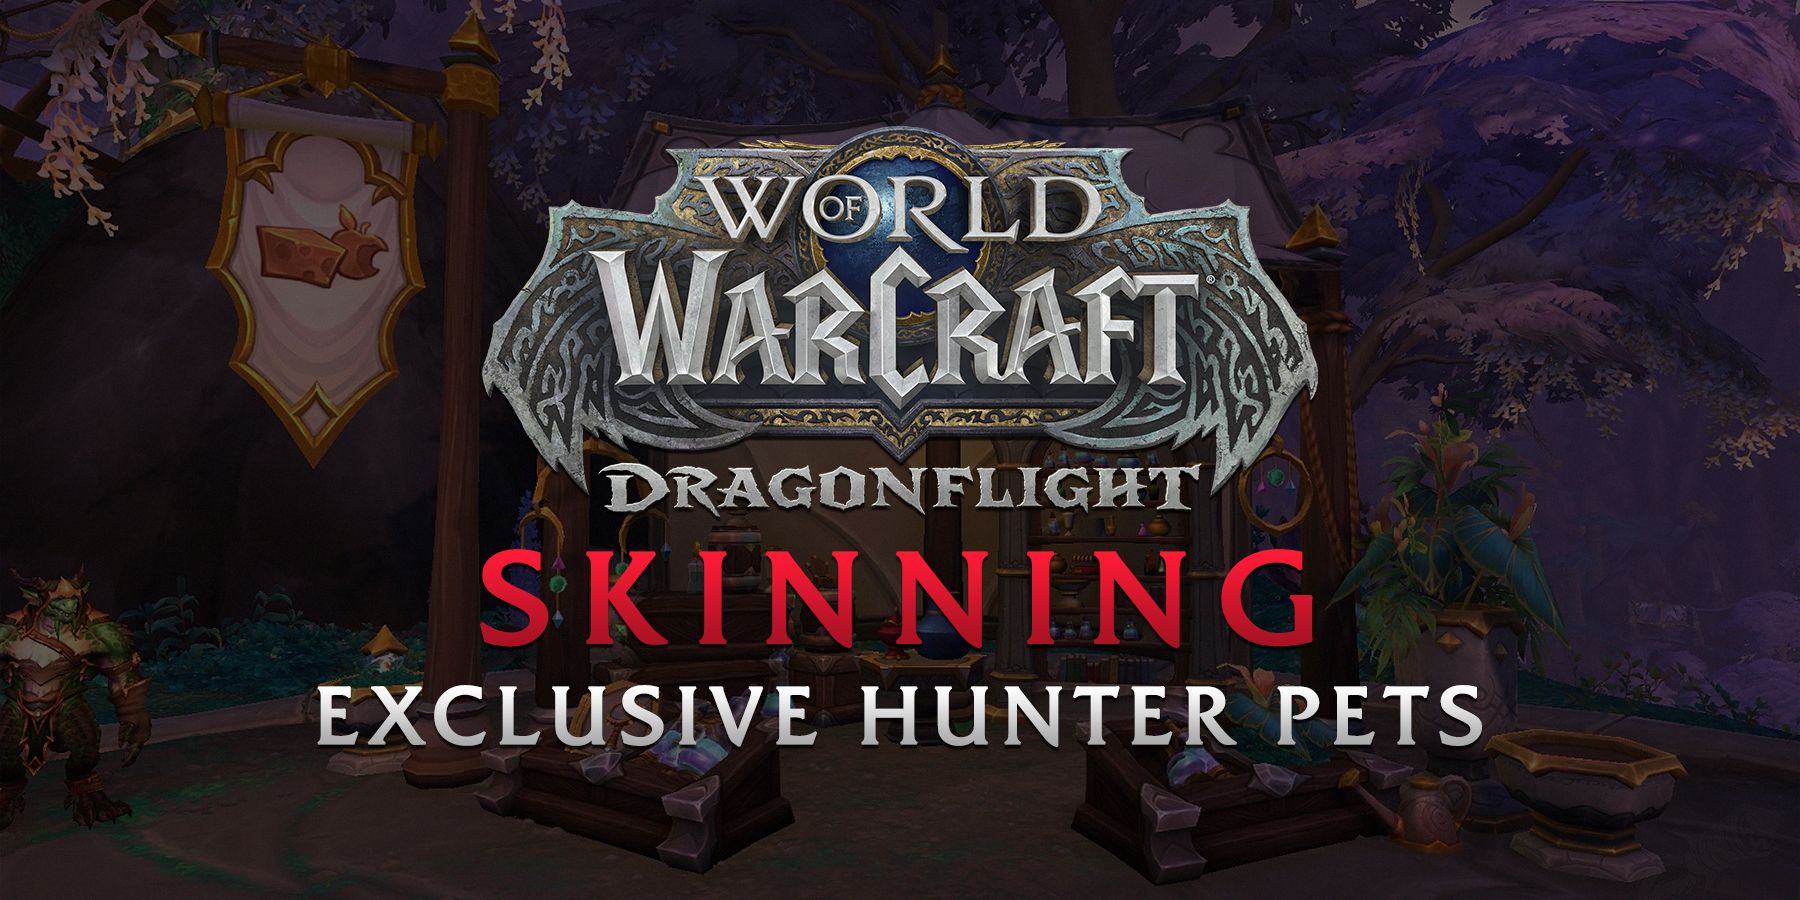 Gracze World of Warcraft mogą oswajać unikalne zwierzaki w Dragonflight dzięki profesji skórowania